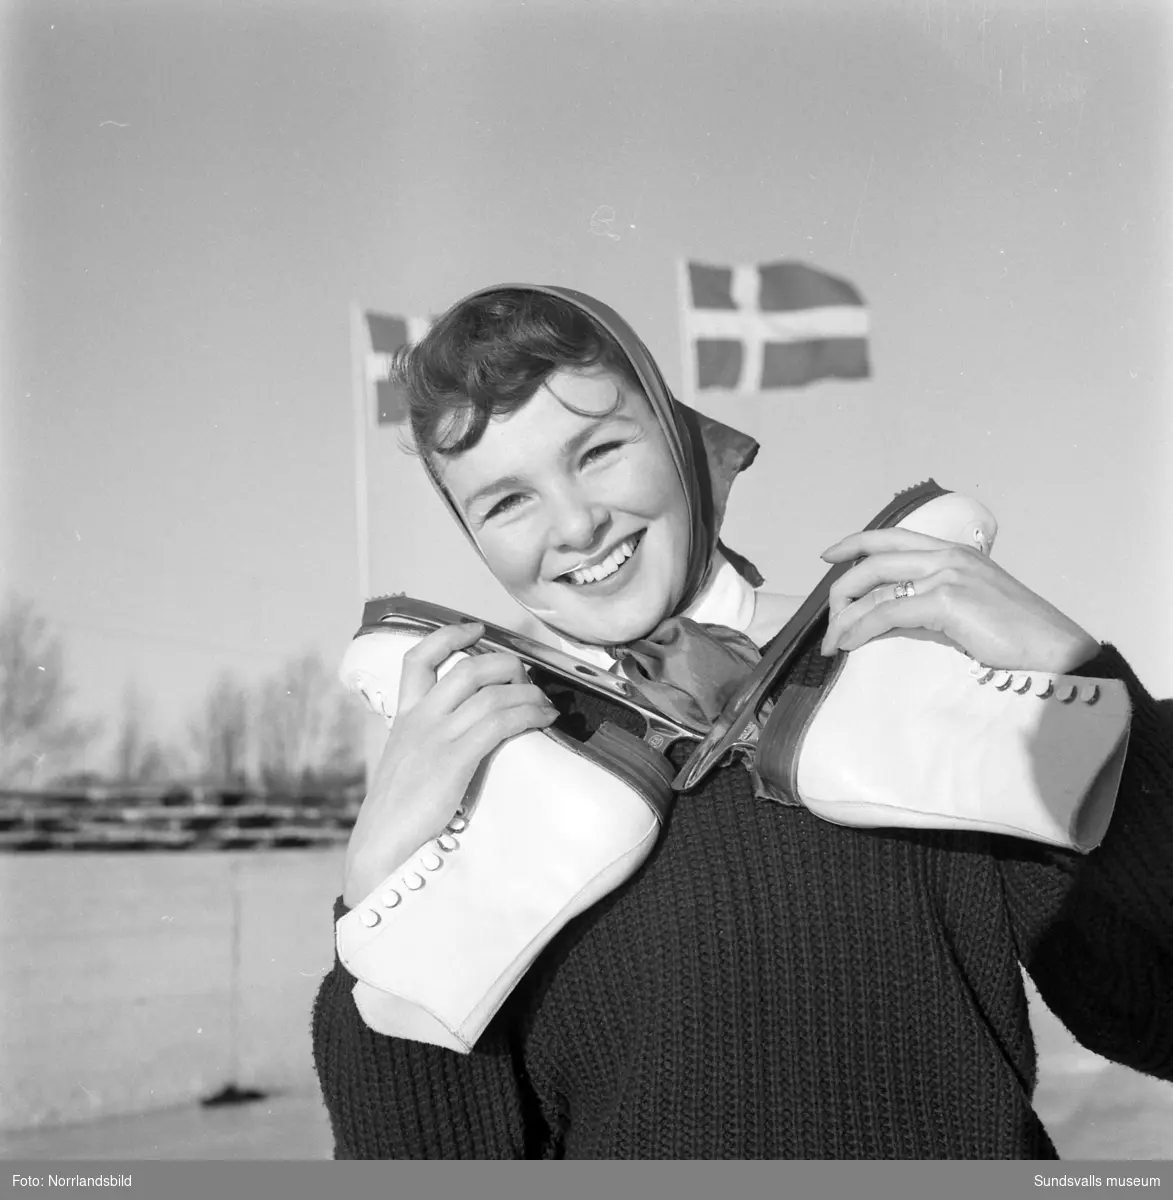 Konståknings-SM på Heffnersplanen i Skönsberg där hemmaåkaren Ulla Nedegård tog brons.